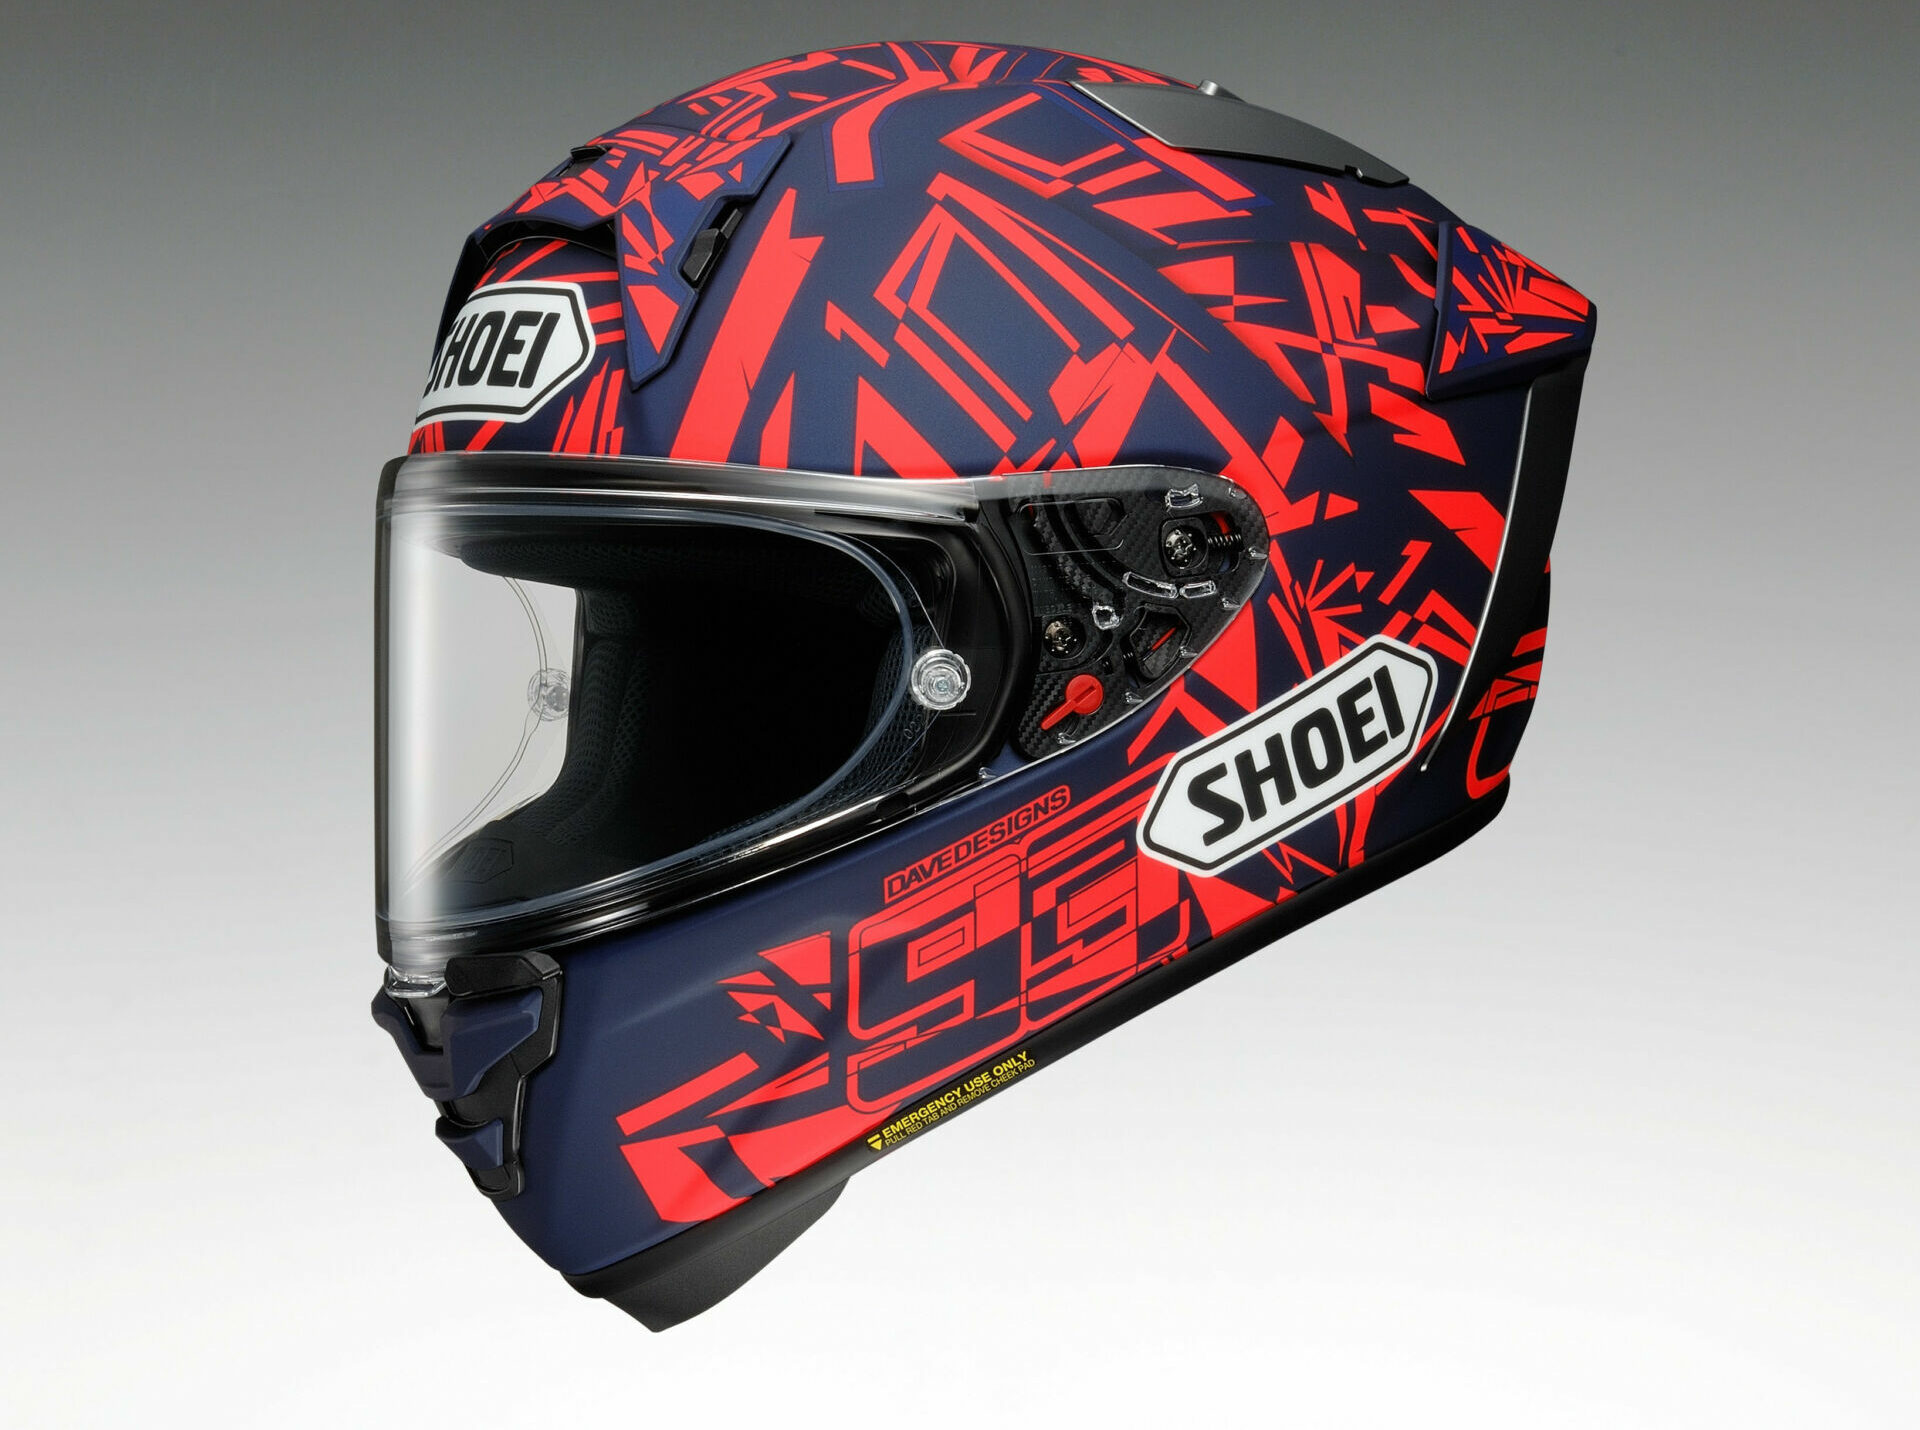 Shoei Marc Marquez Helmet Price: Safe & Superior!